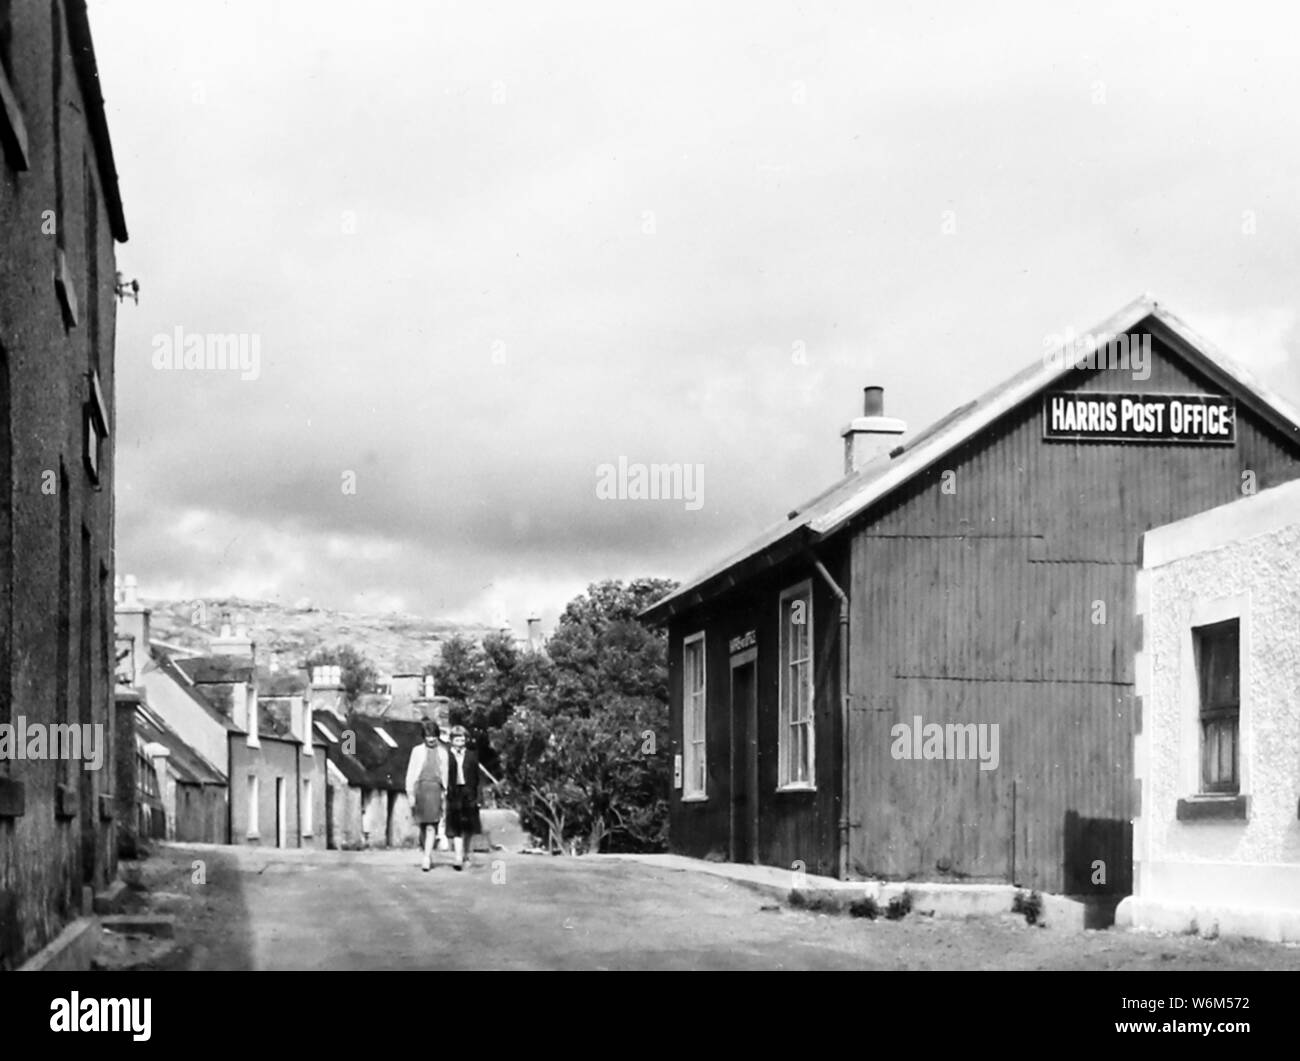 Isle of Harris Post Office, Scozia negli anni quaranta Foto Stock